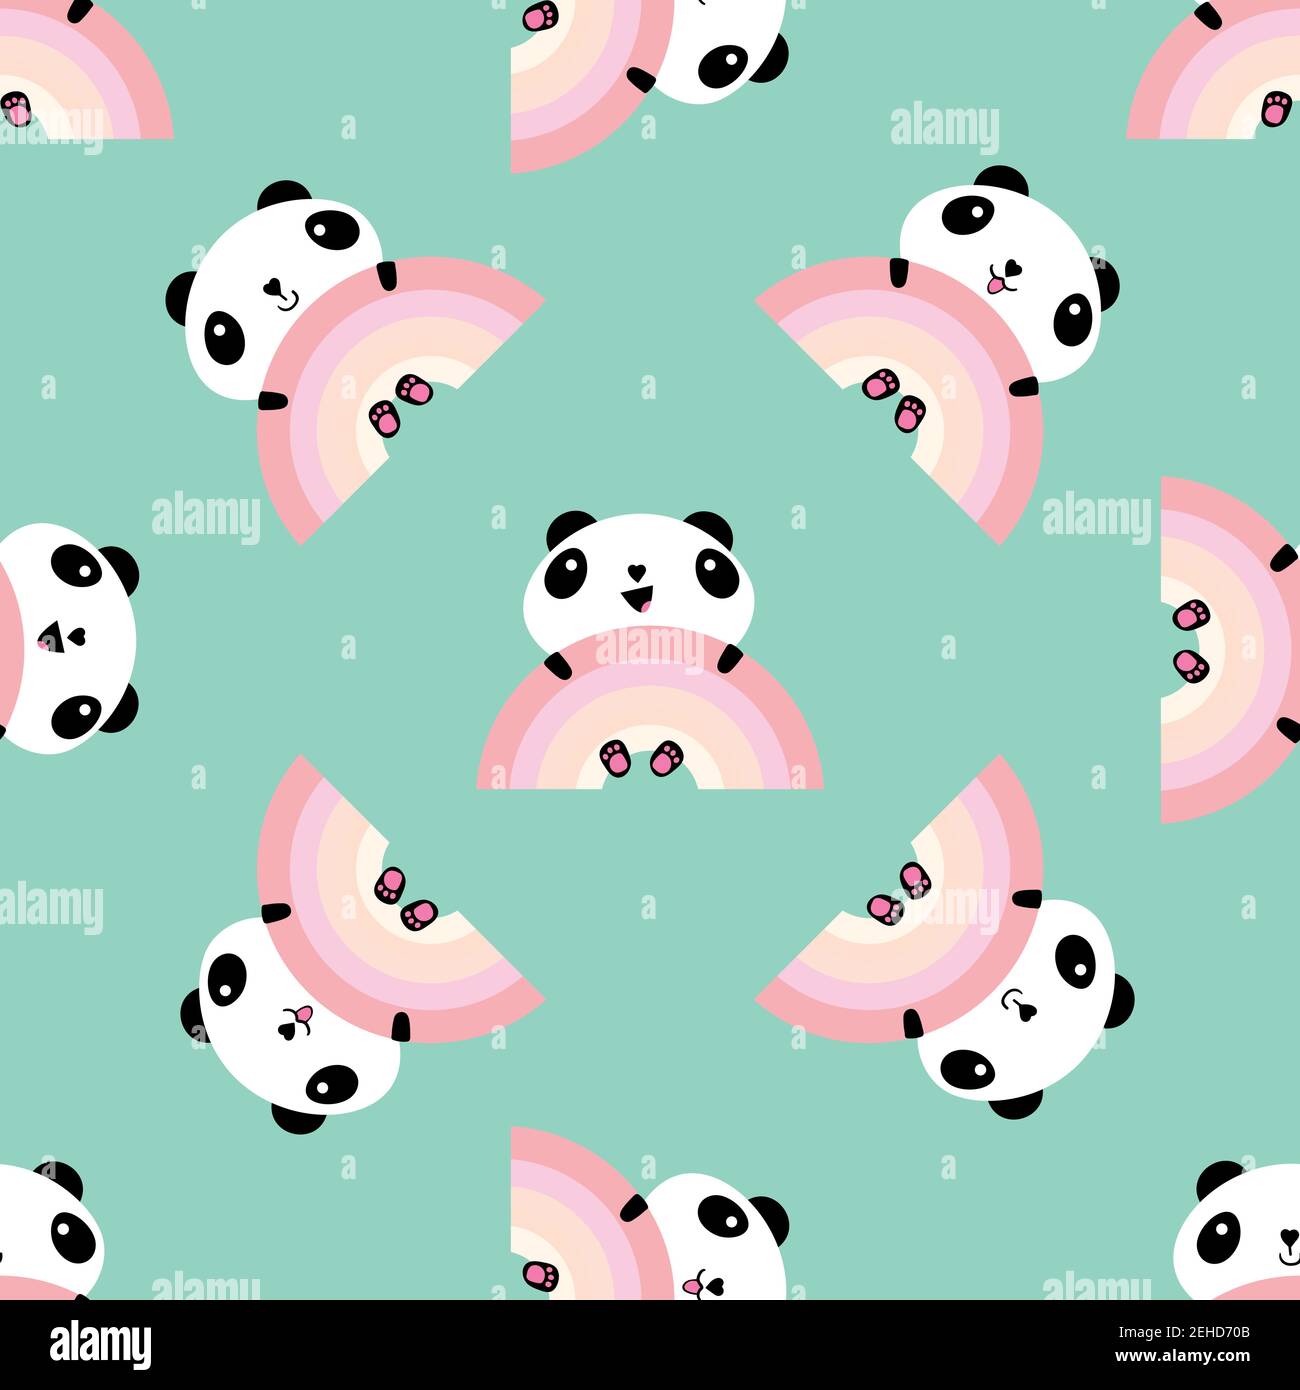 Cute panda kawaii style Royalty Free Vector Image